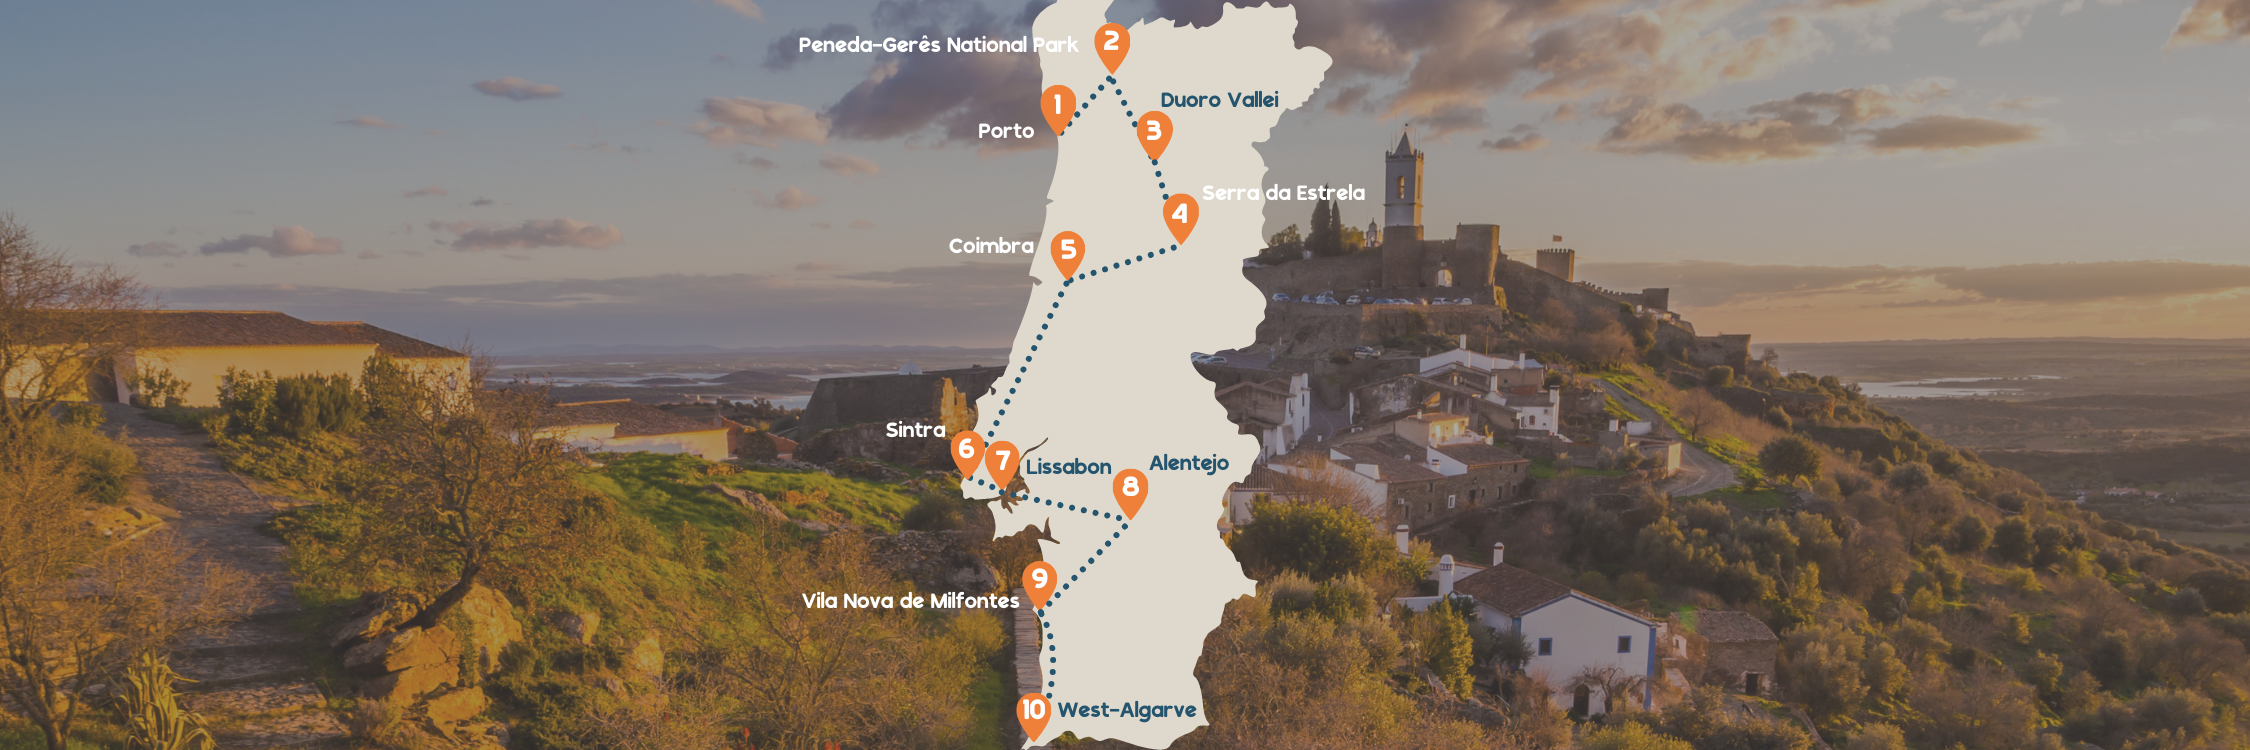 Routekaartje Roadtrip Portugal